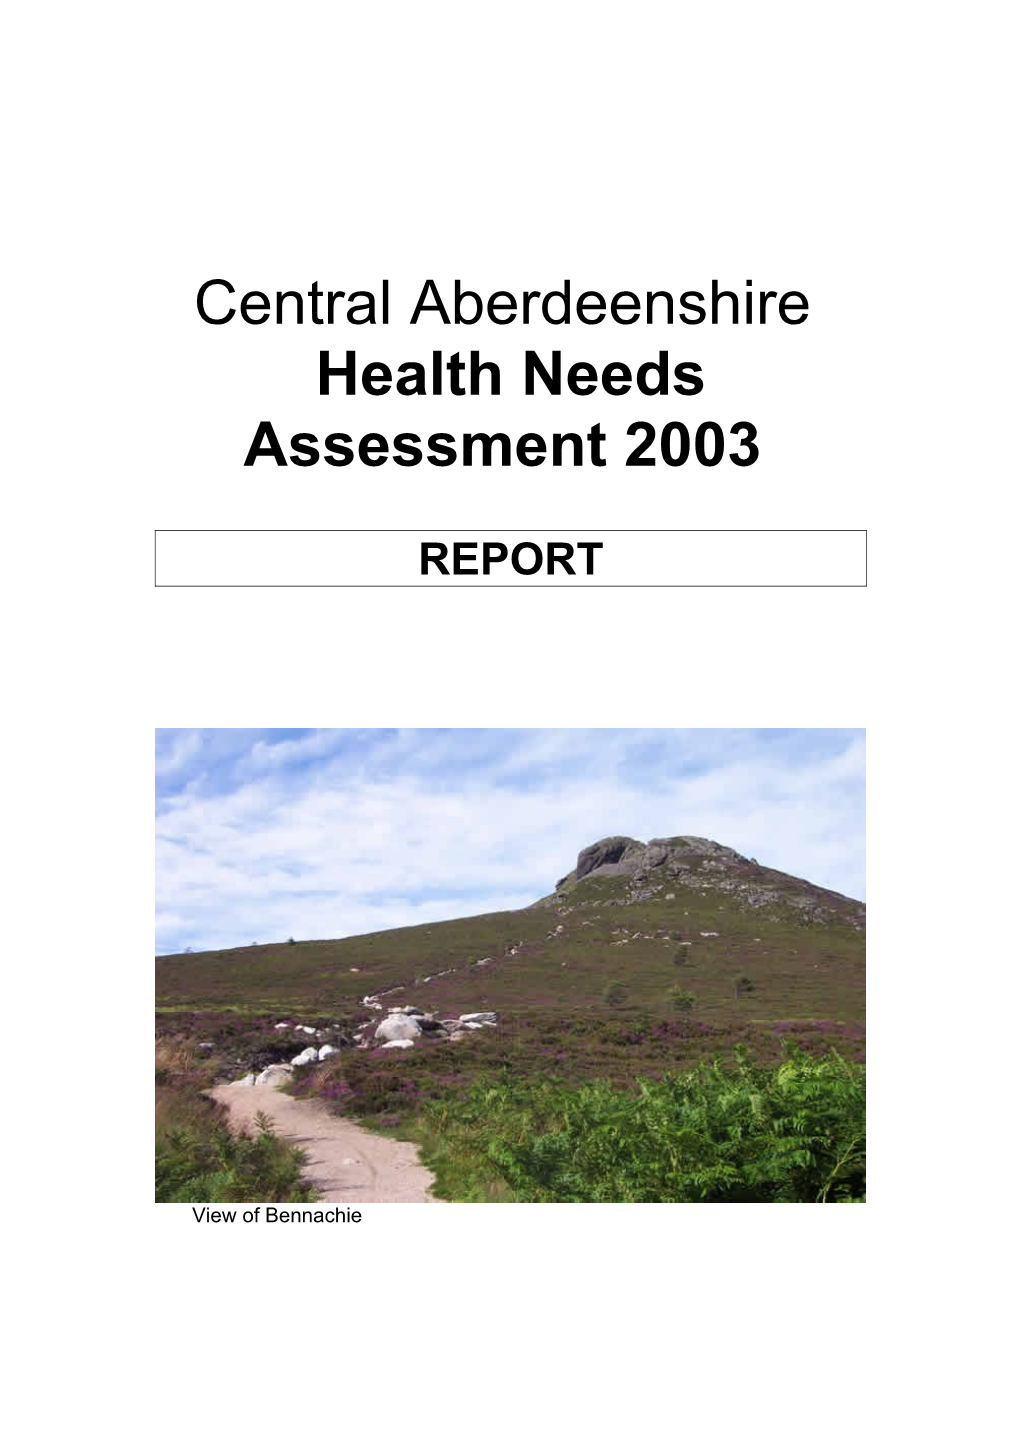 Central Aberdeenshire Health Needs Assessment 2003